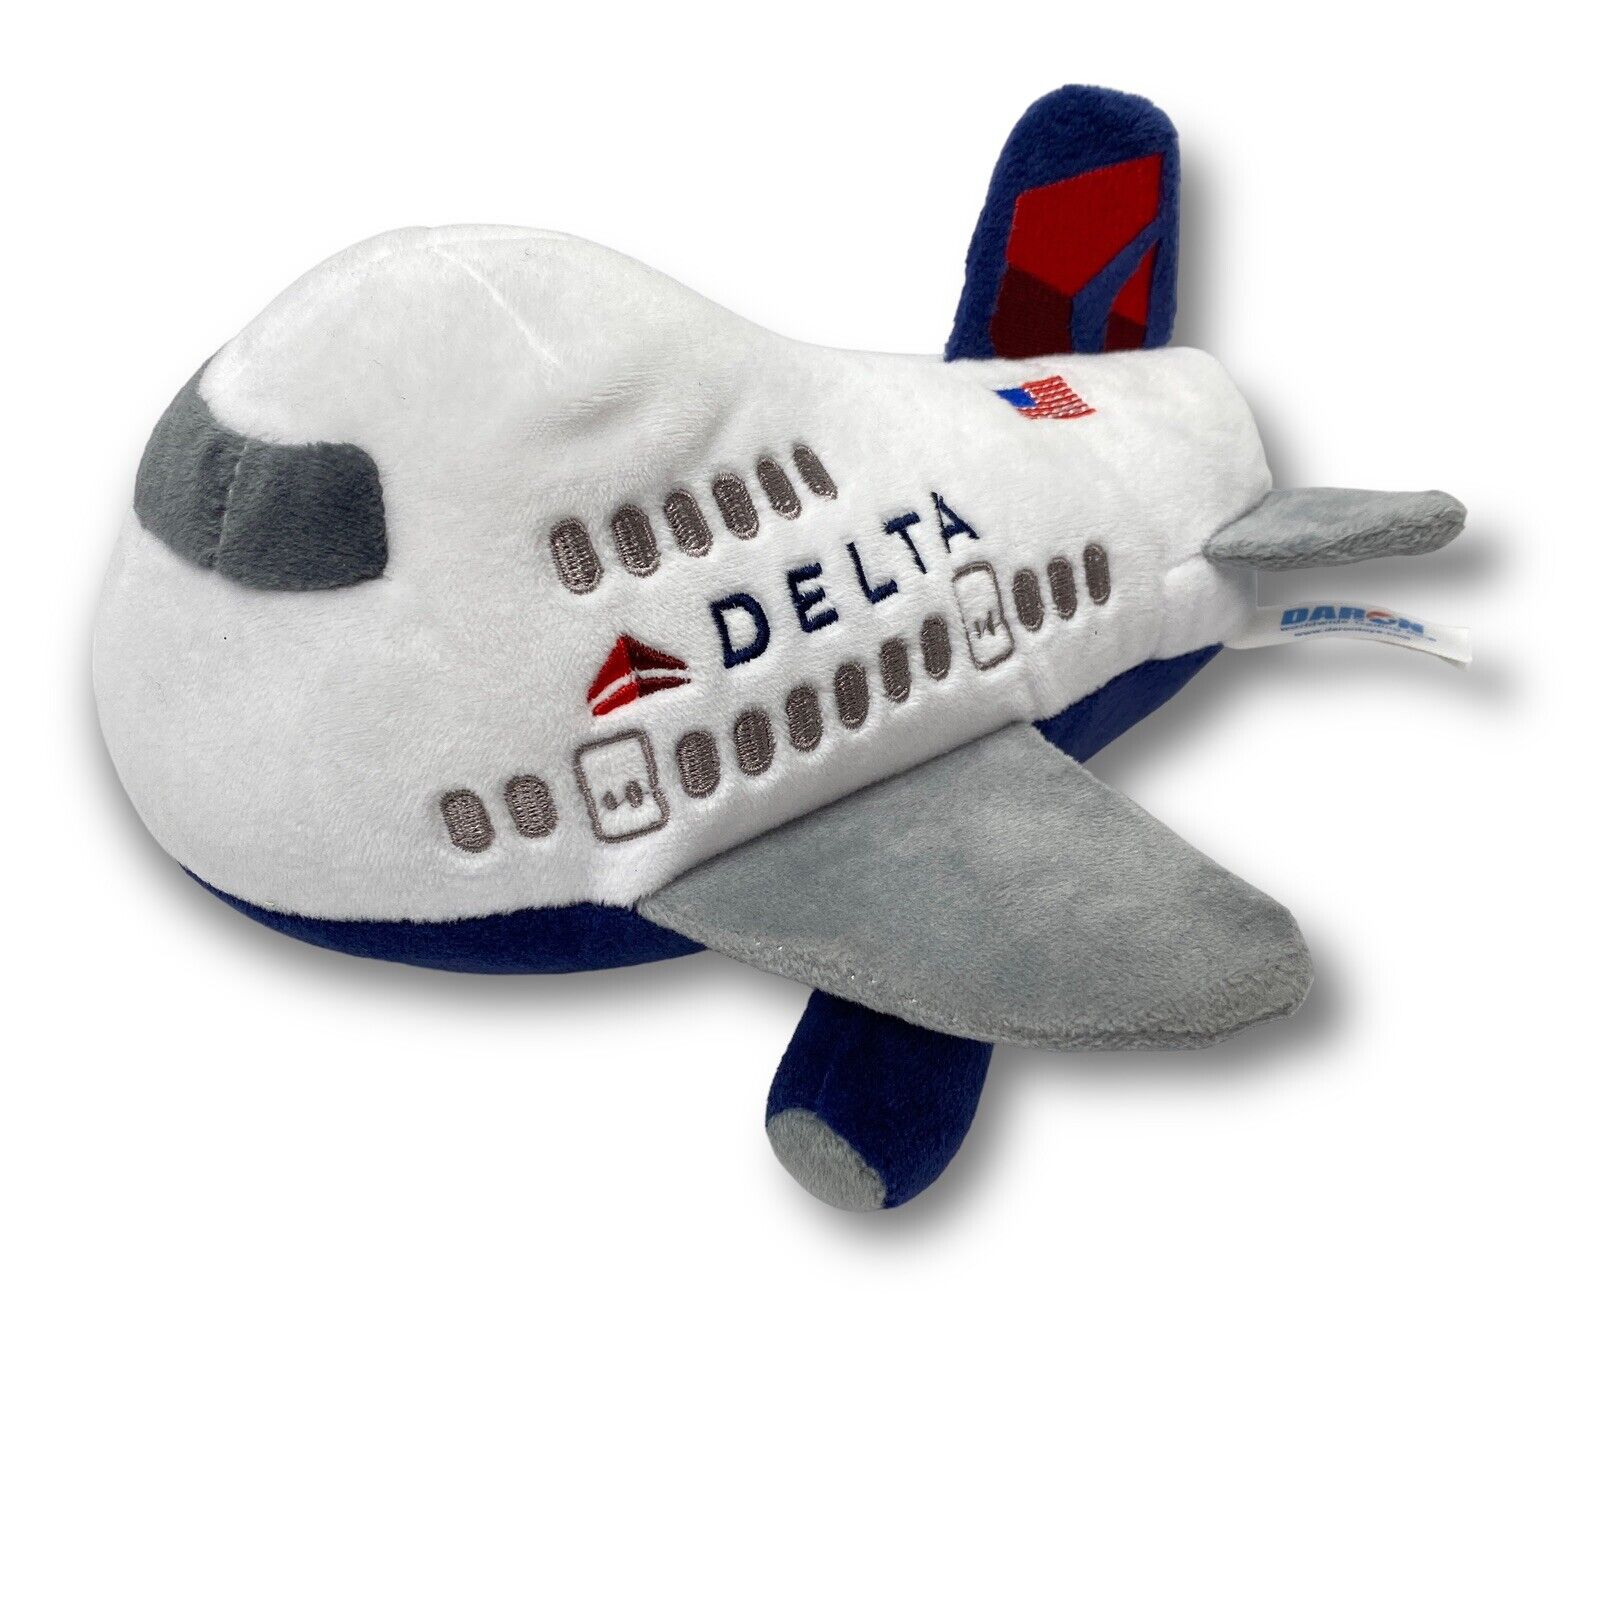 Delta Airlines Airplane Plush Toy 2018 Daron Sound Works HTF